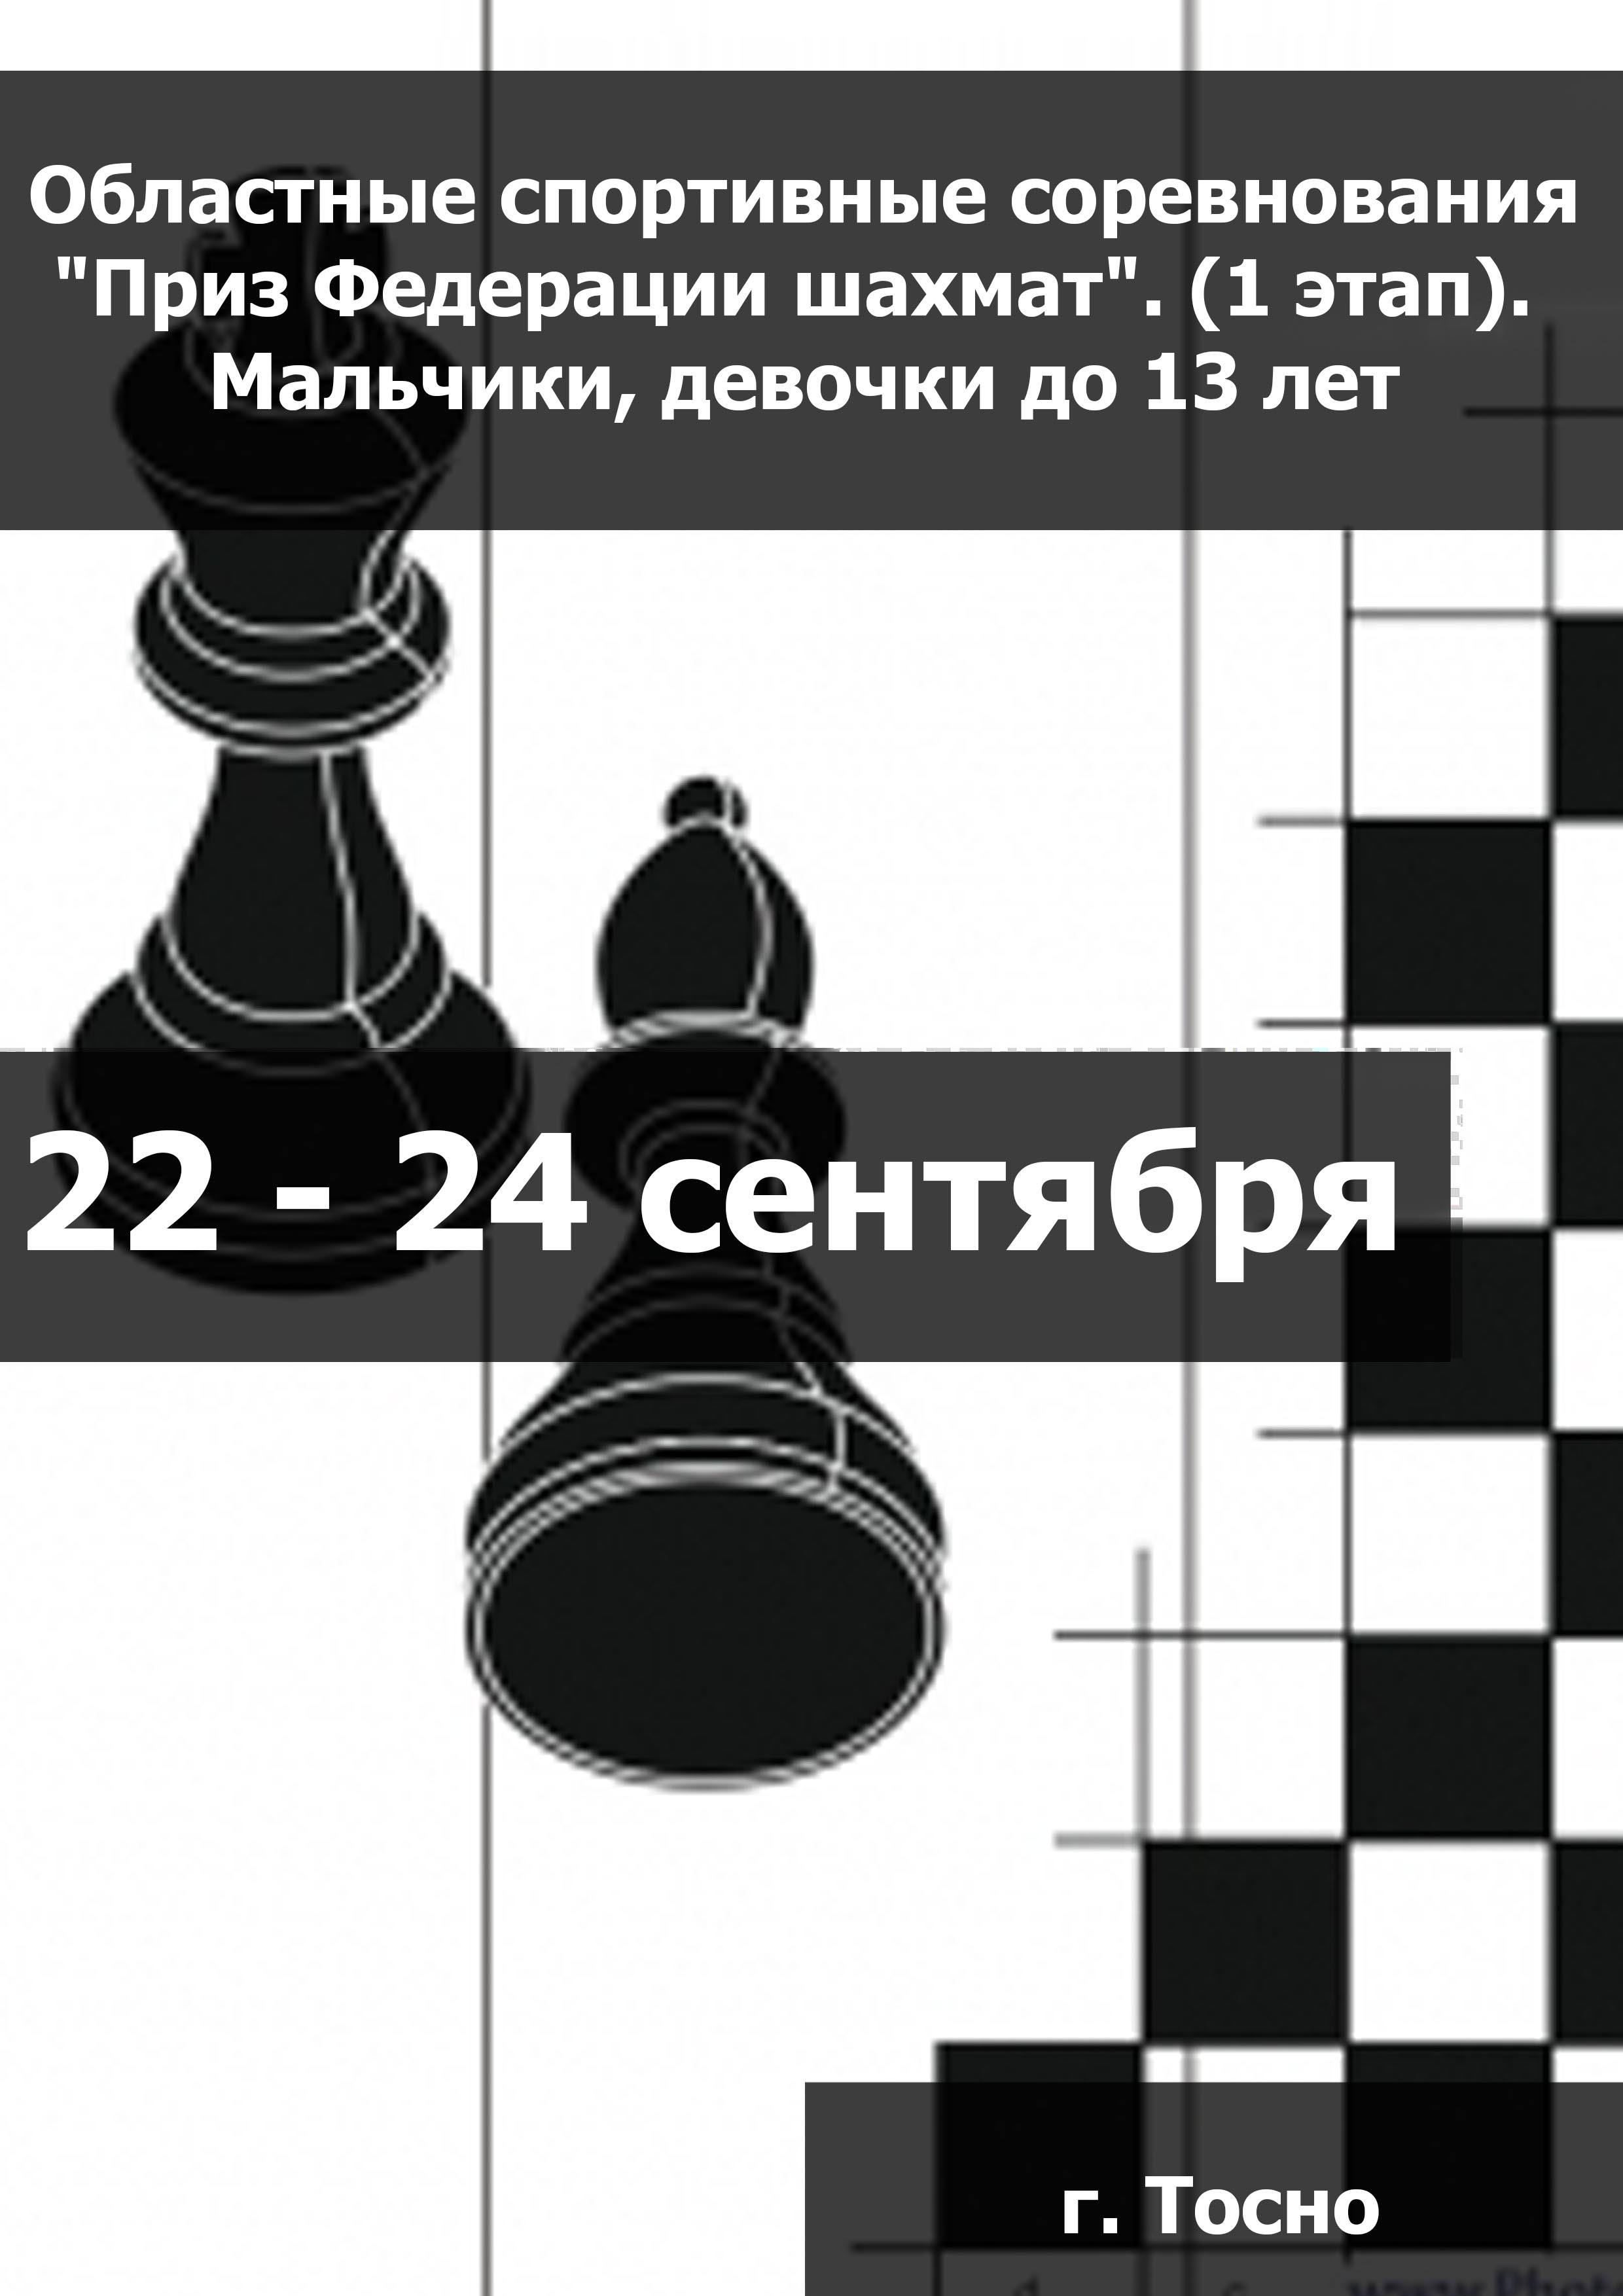 Областные спортивные соревнования "Приз Федерации шахмат". (1 этап).  Мальчики, девочки до 13 лет  22  ເດືອນກັນຍາ
 2023  ປີ
 